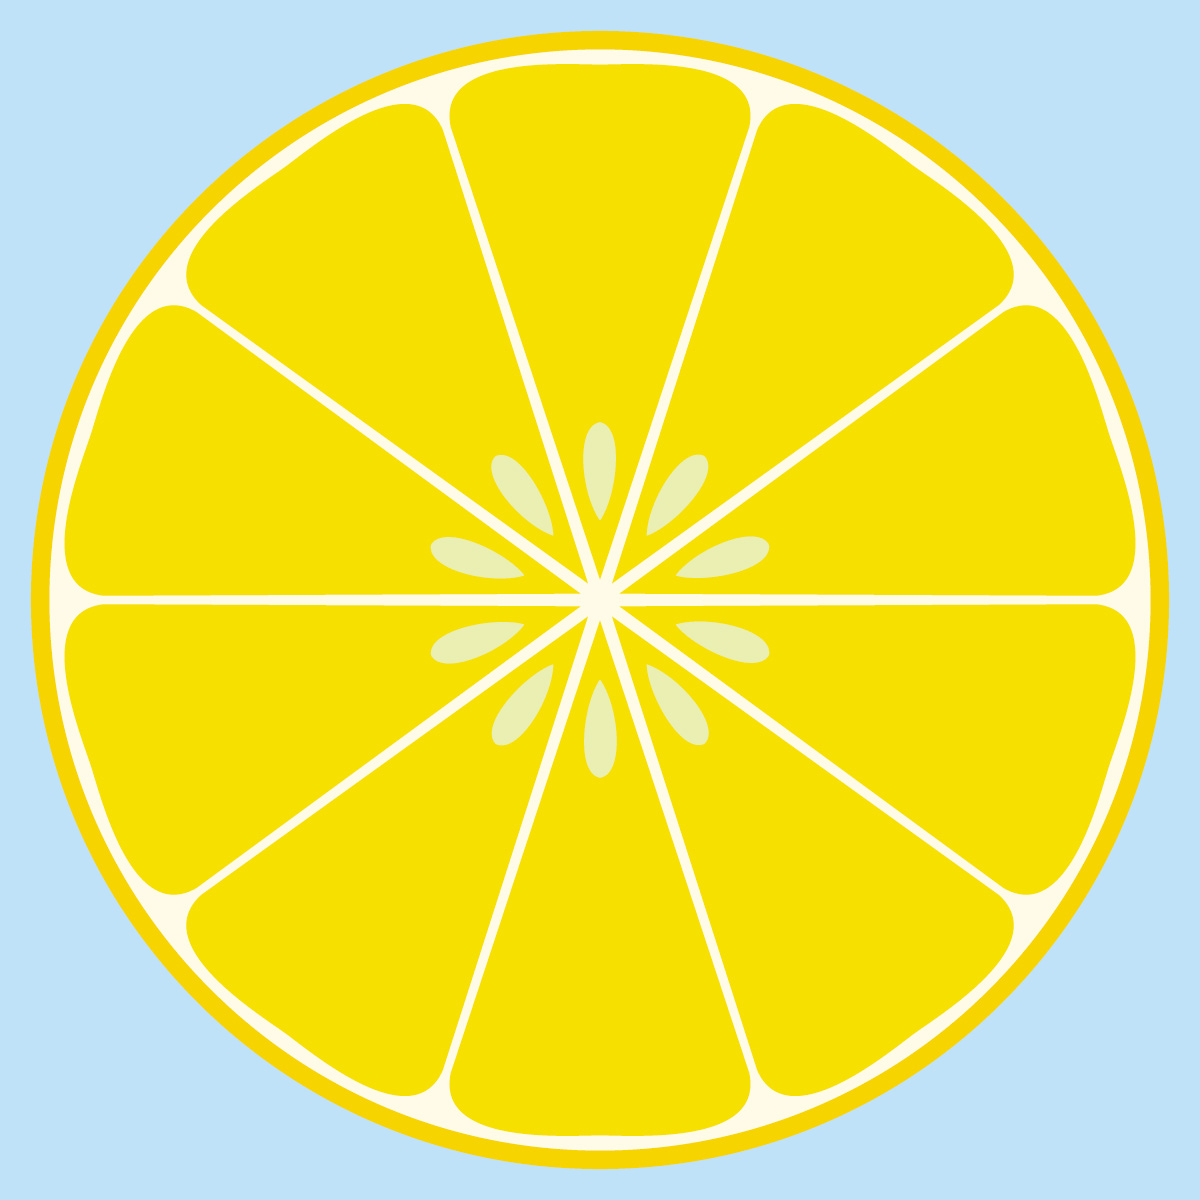 free lemon clip art images - photo #37